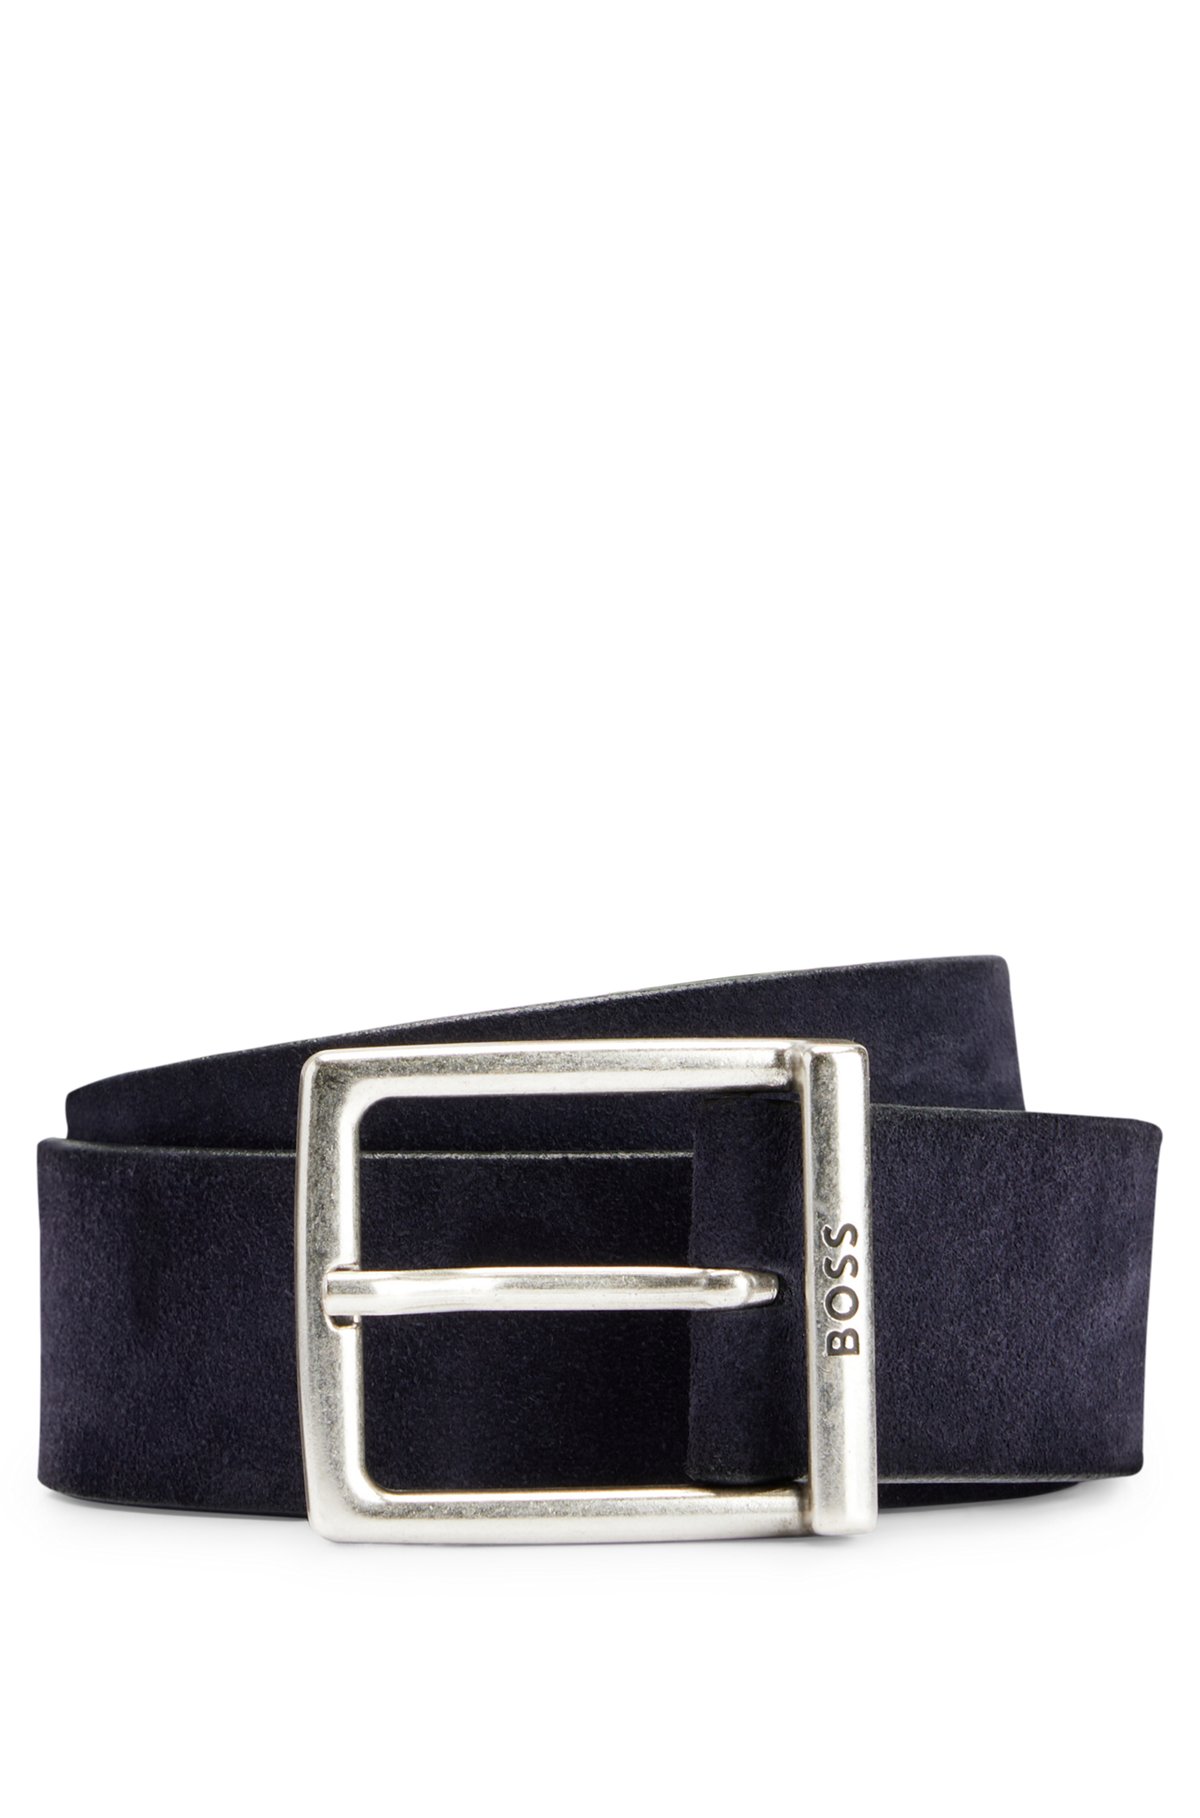 Cinturón de ante con hebilla cuadrada y logo grabado, Azul oscuro